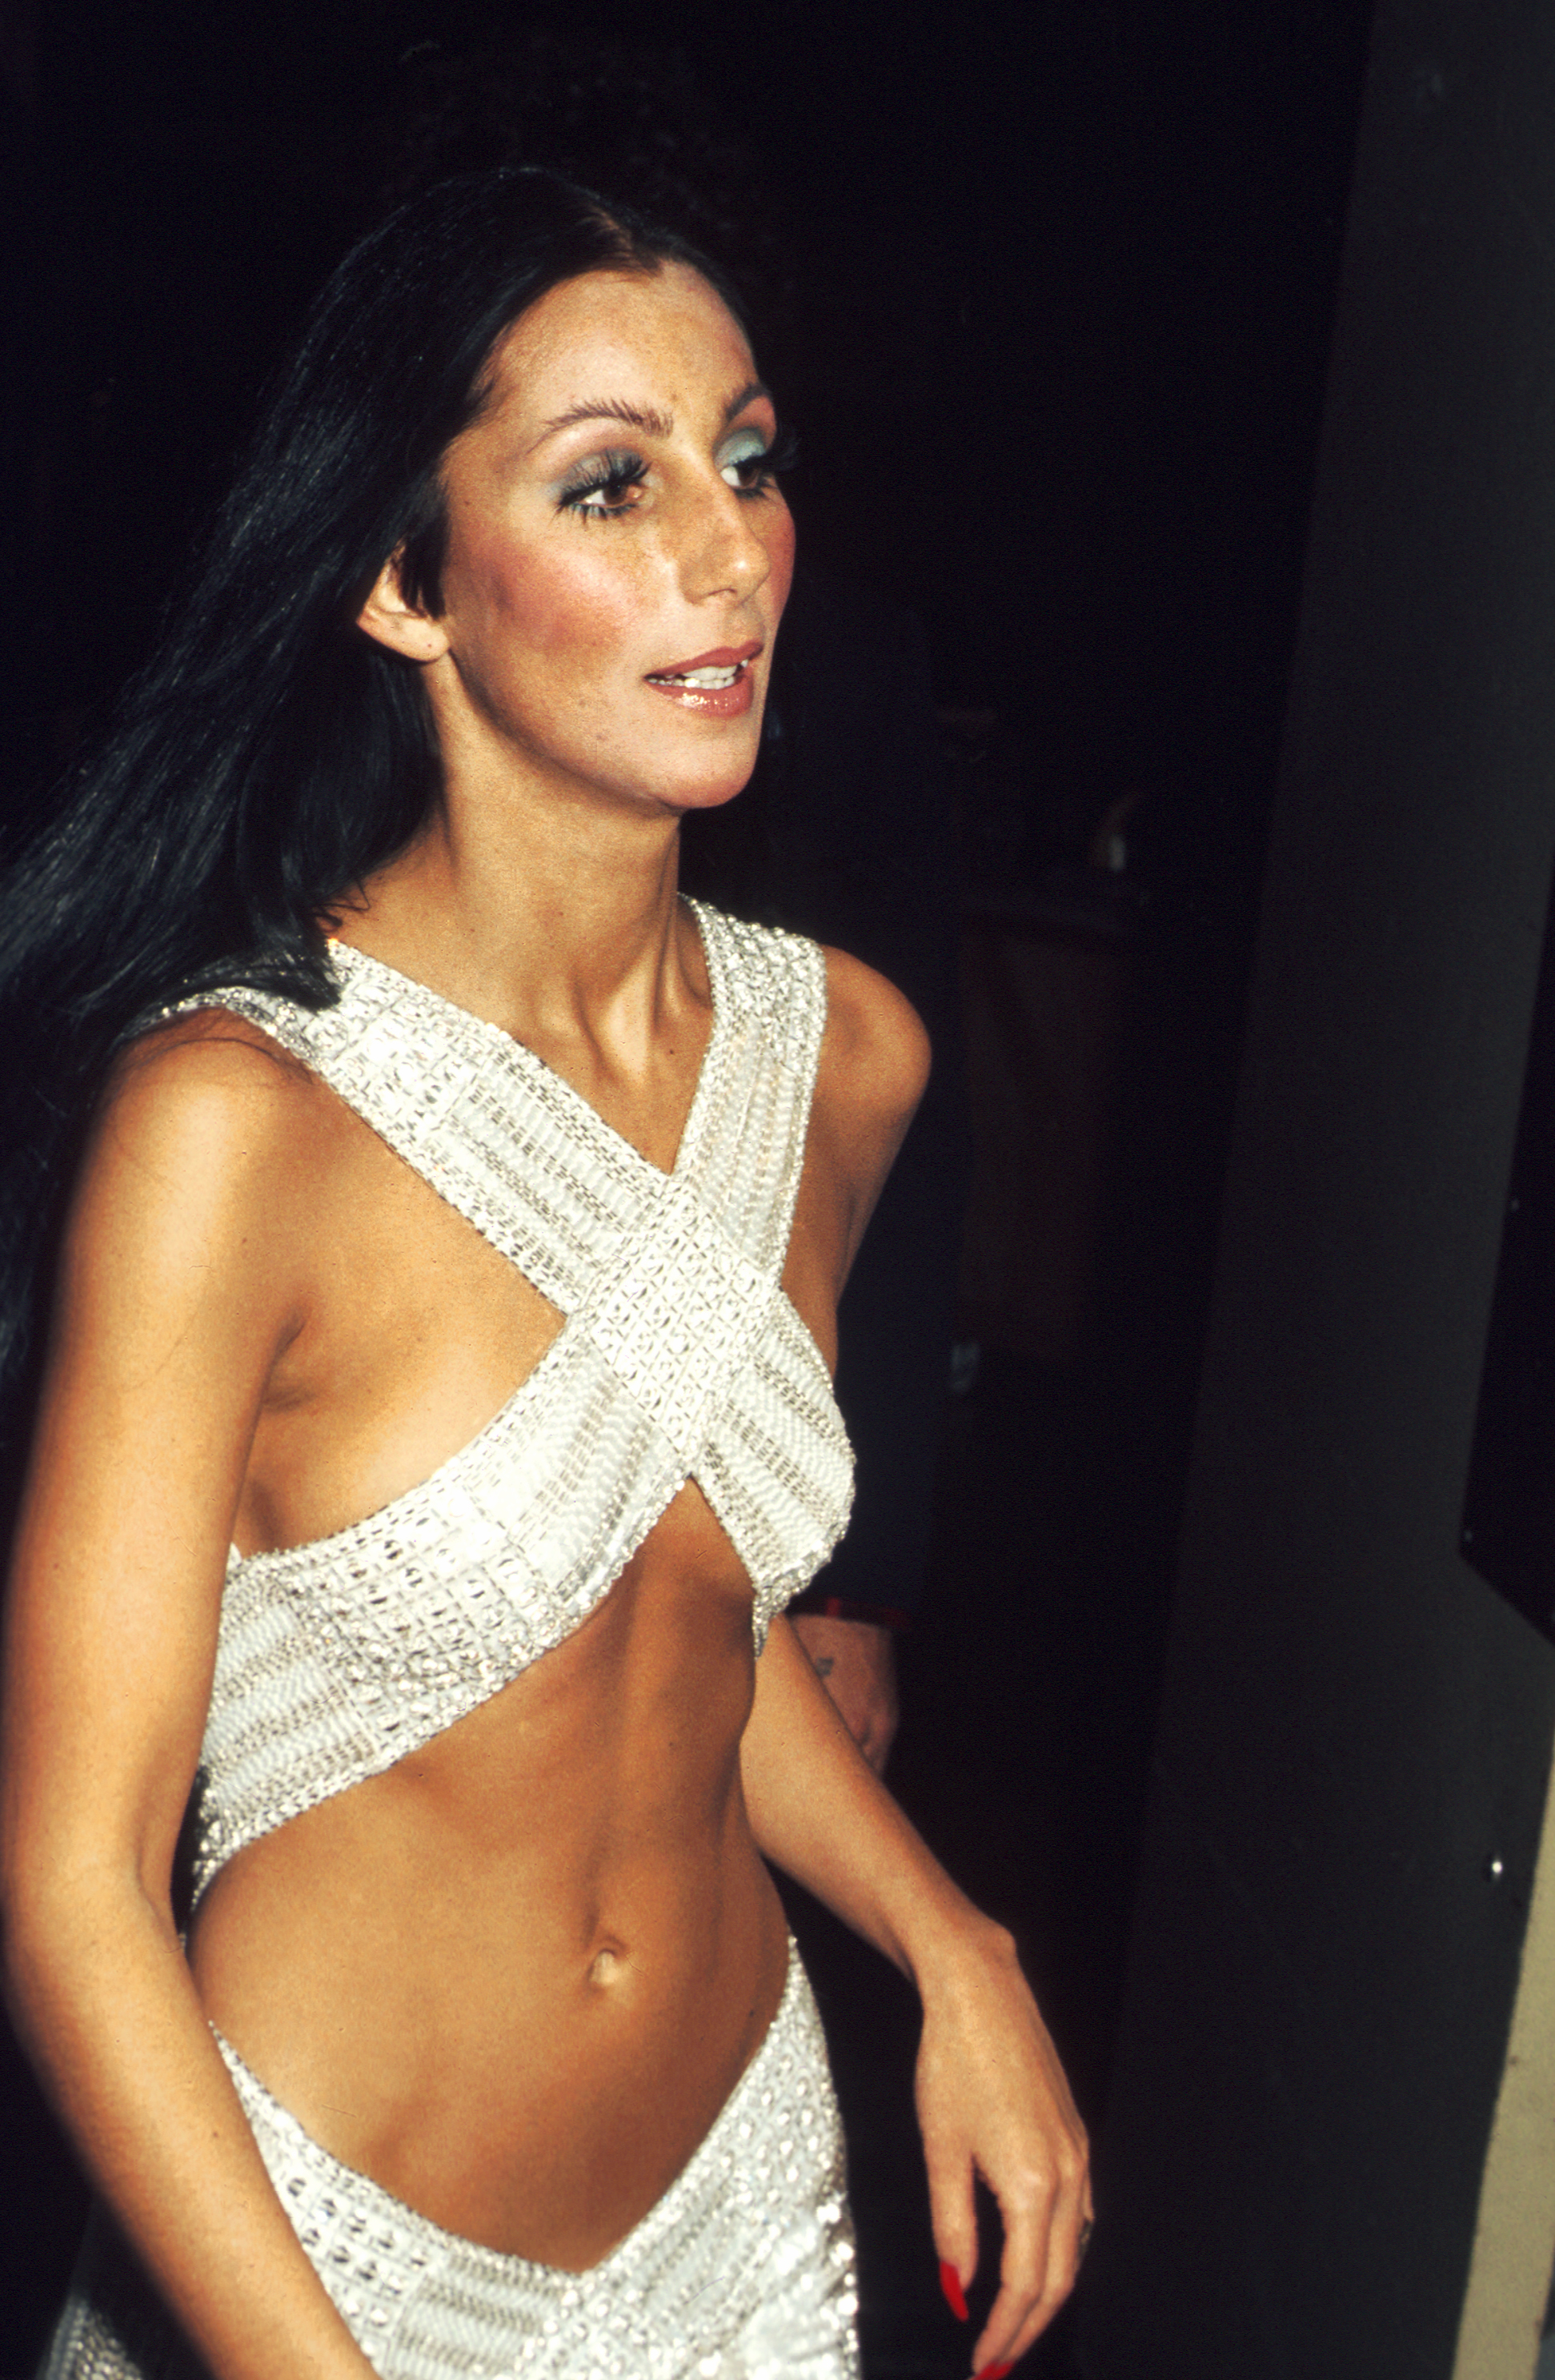 L'artiste Cher assiste aux Rock Music Awards au Santa Monica Civic Auditorium le 9 août 1975 à Los Angeles, Californie. | Source : Getty Images